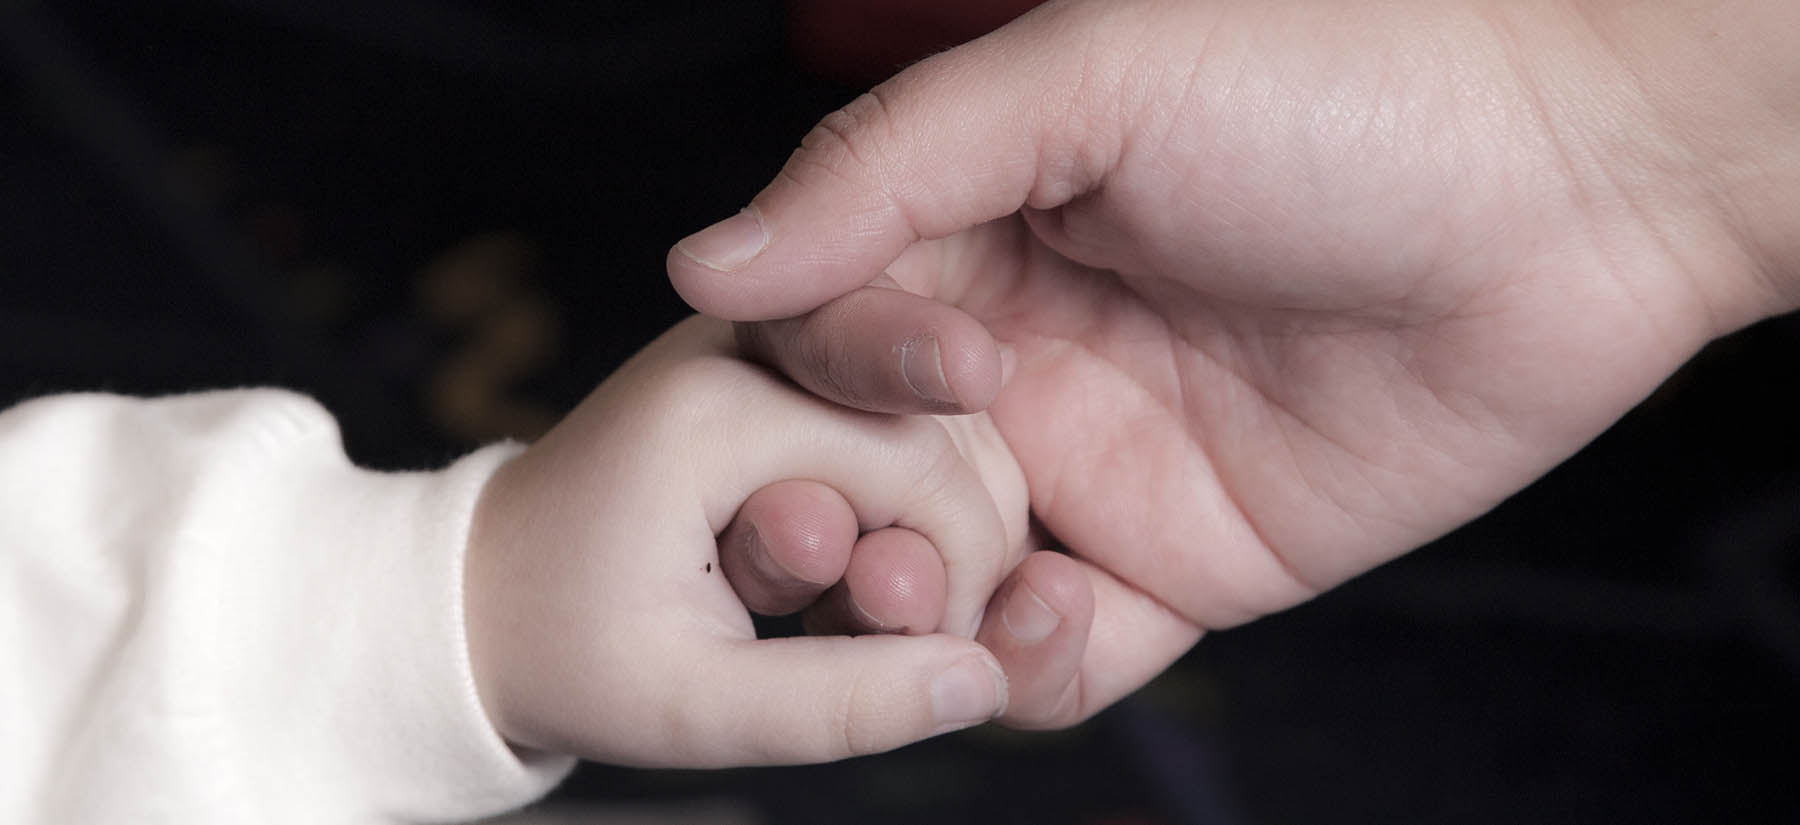 बच्चे का हाथ पकड़े हुए व्यक्ति